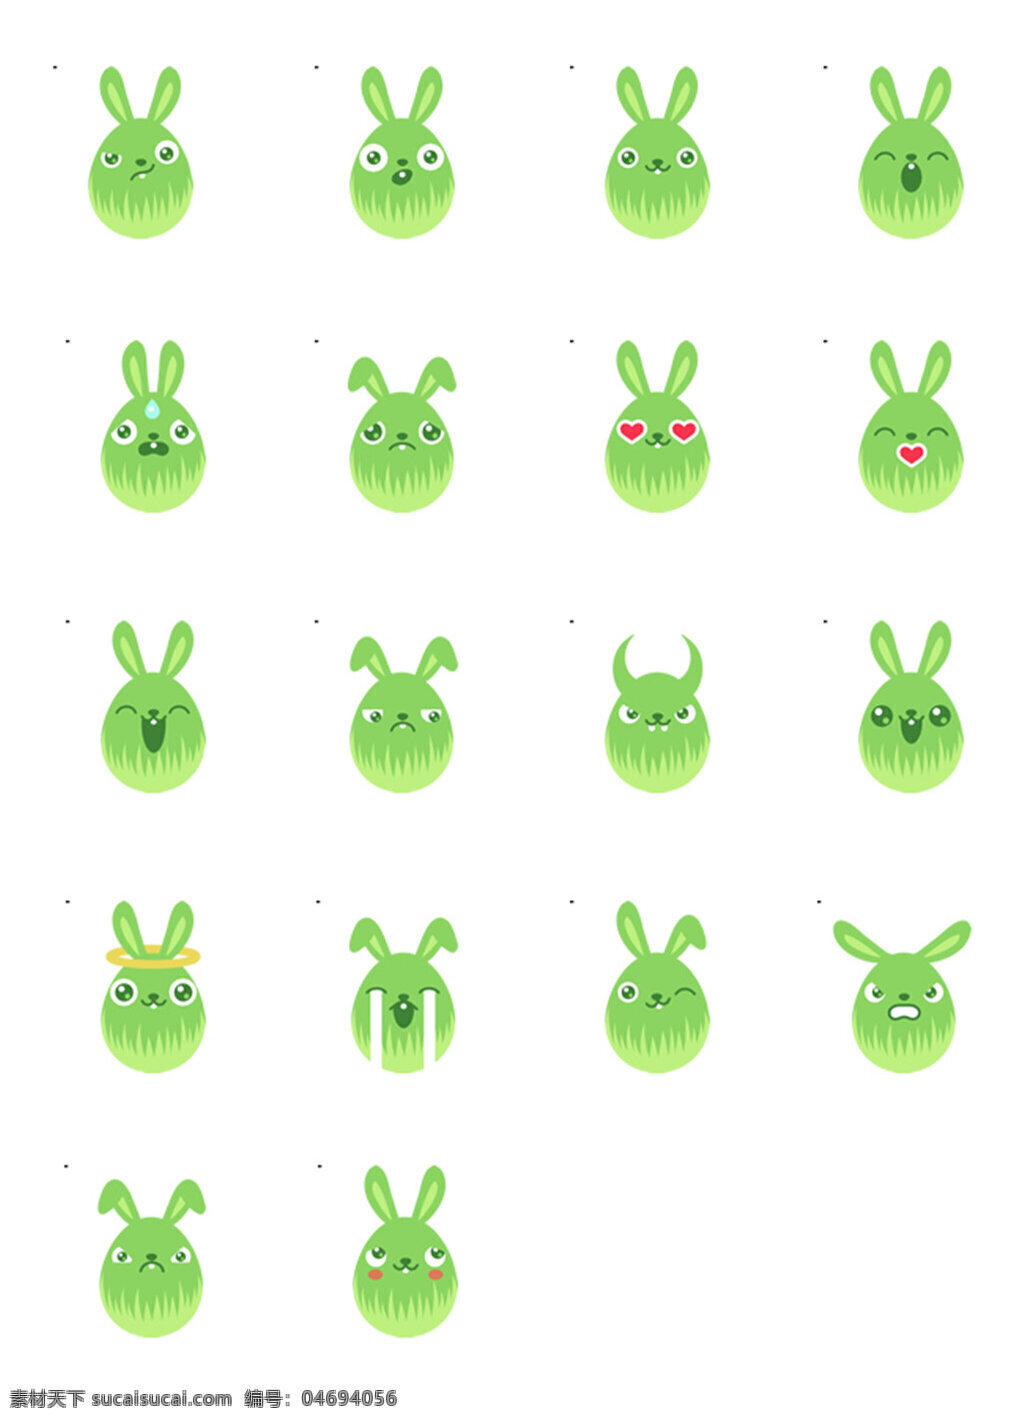 搞 怪 鸡蛋 图标素材 搞怪鸡蛋 创意图标 时尚图标 个性图标 图标设计 图标下载 绿色的鸡蛋 长耳朵的鸡蛋 图标素材下载 白色